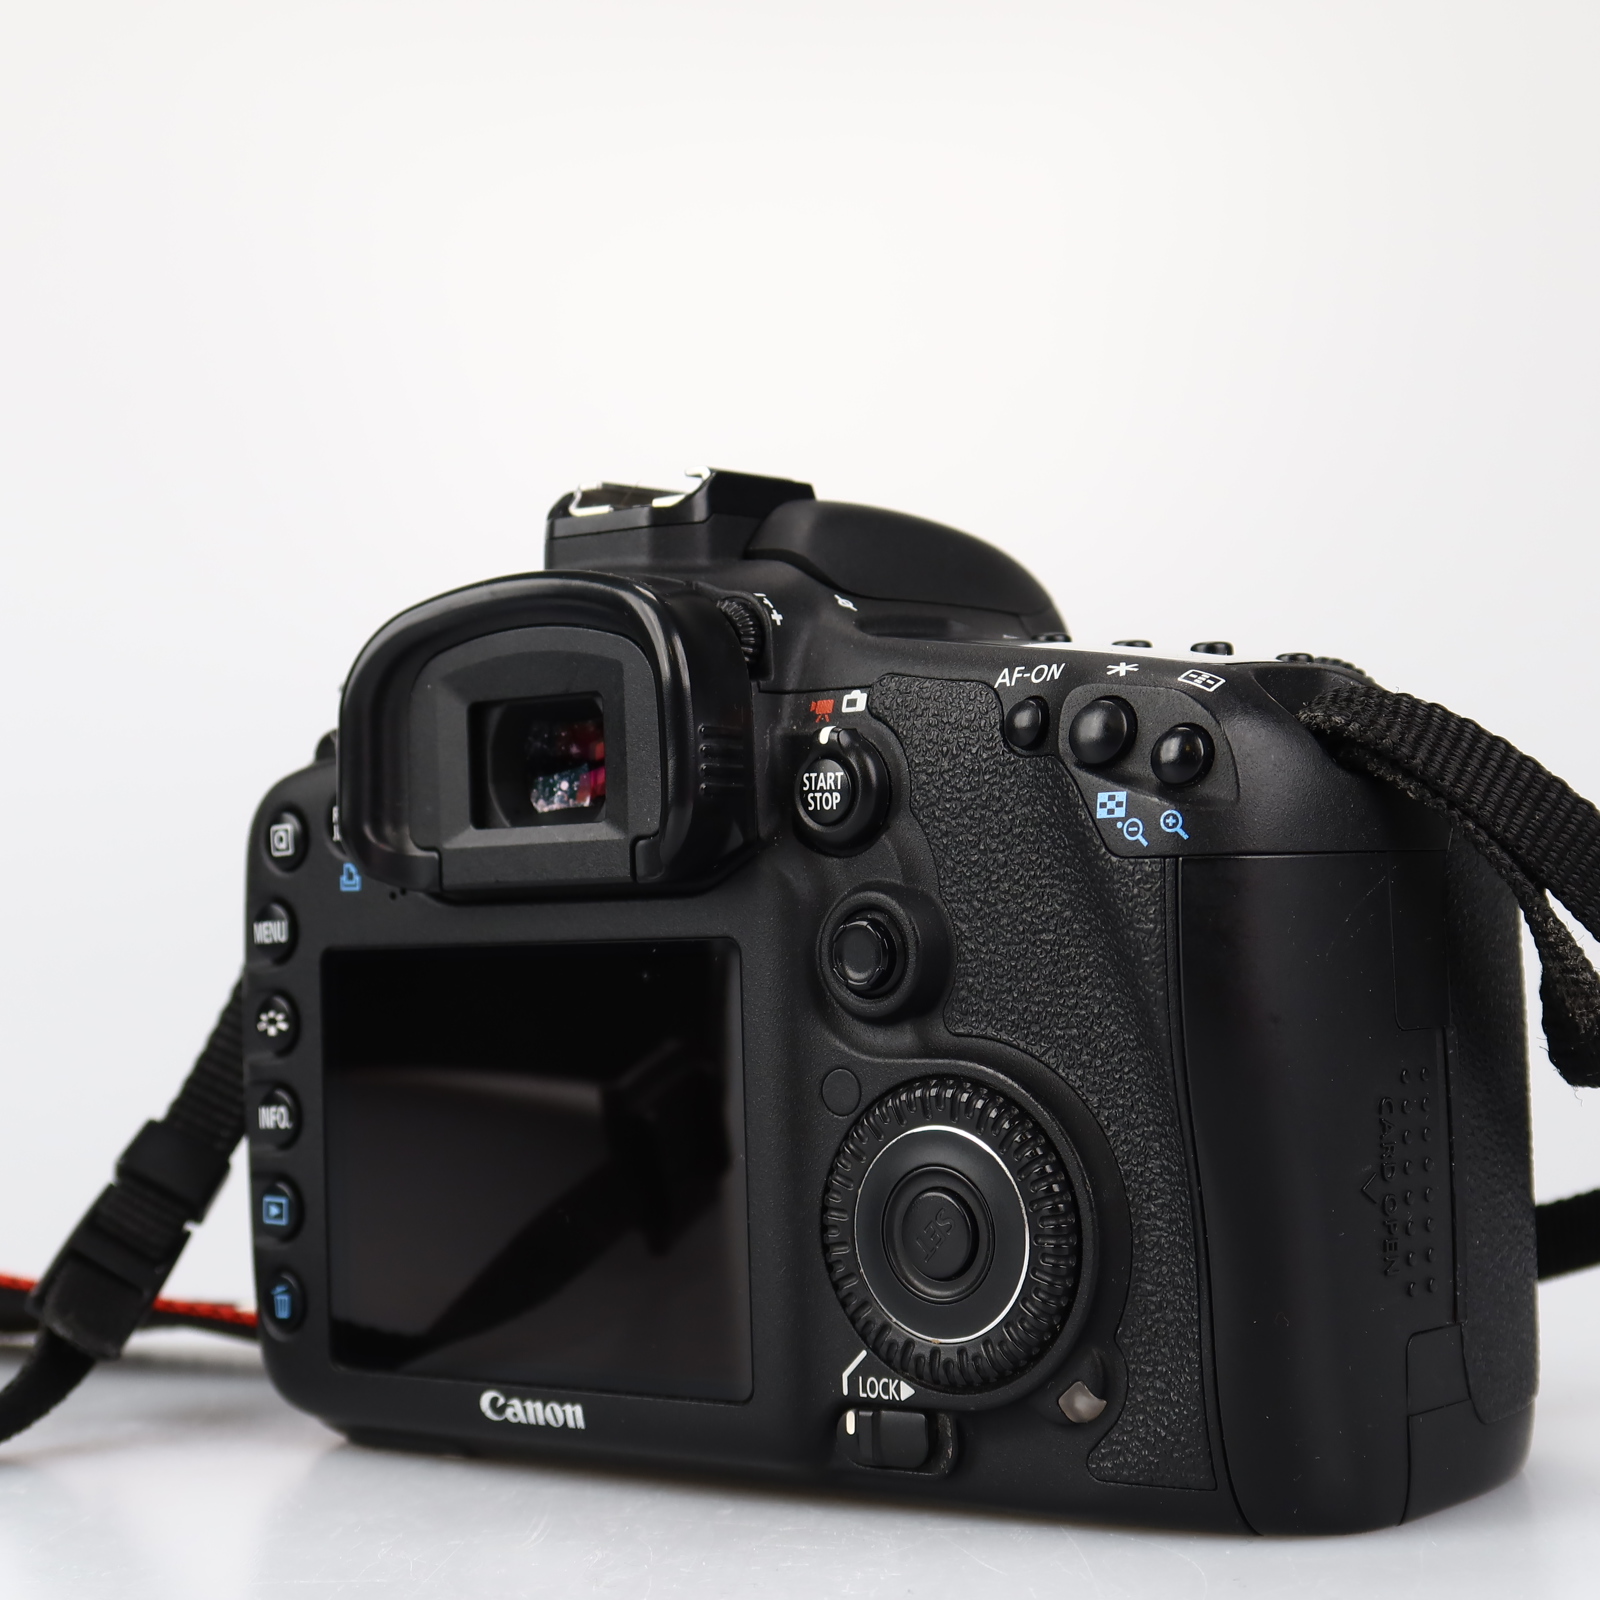 (Myyty) Canon EOS 7D -runko (SC 8570) (käytetty)